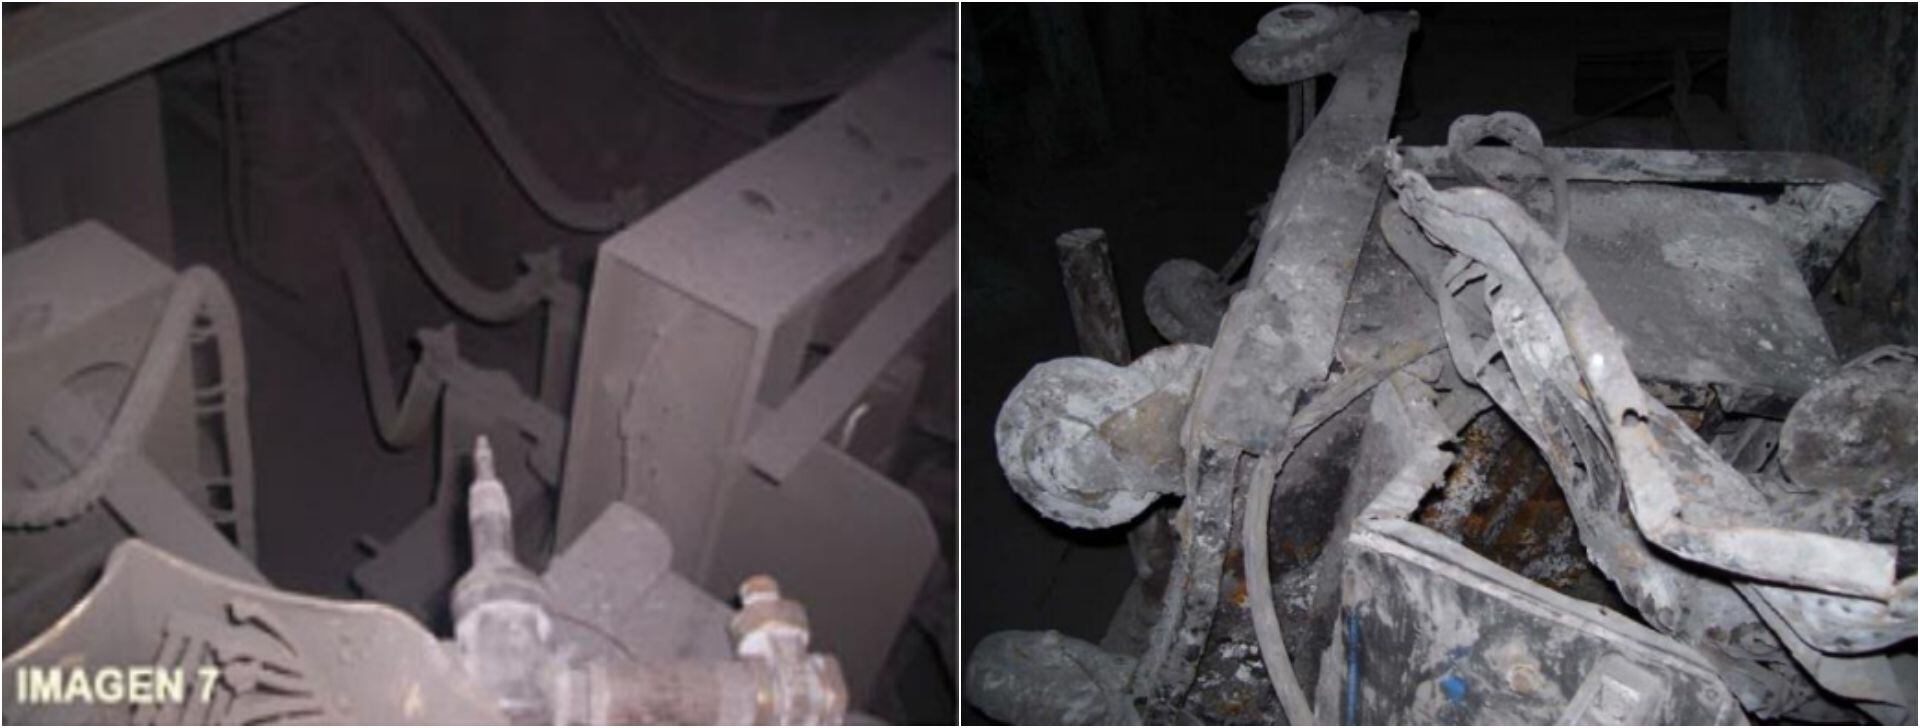 Fotos del equipo de trabajo que usaban los mineros atrapados en Pasta de Conchos